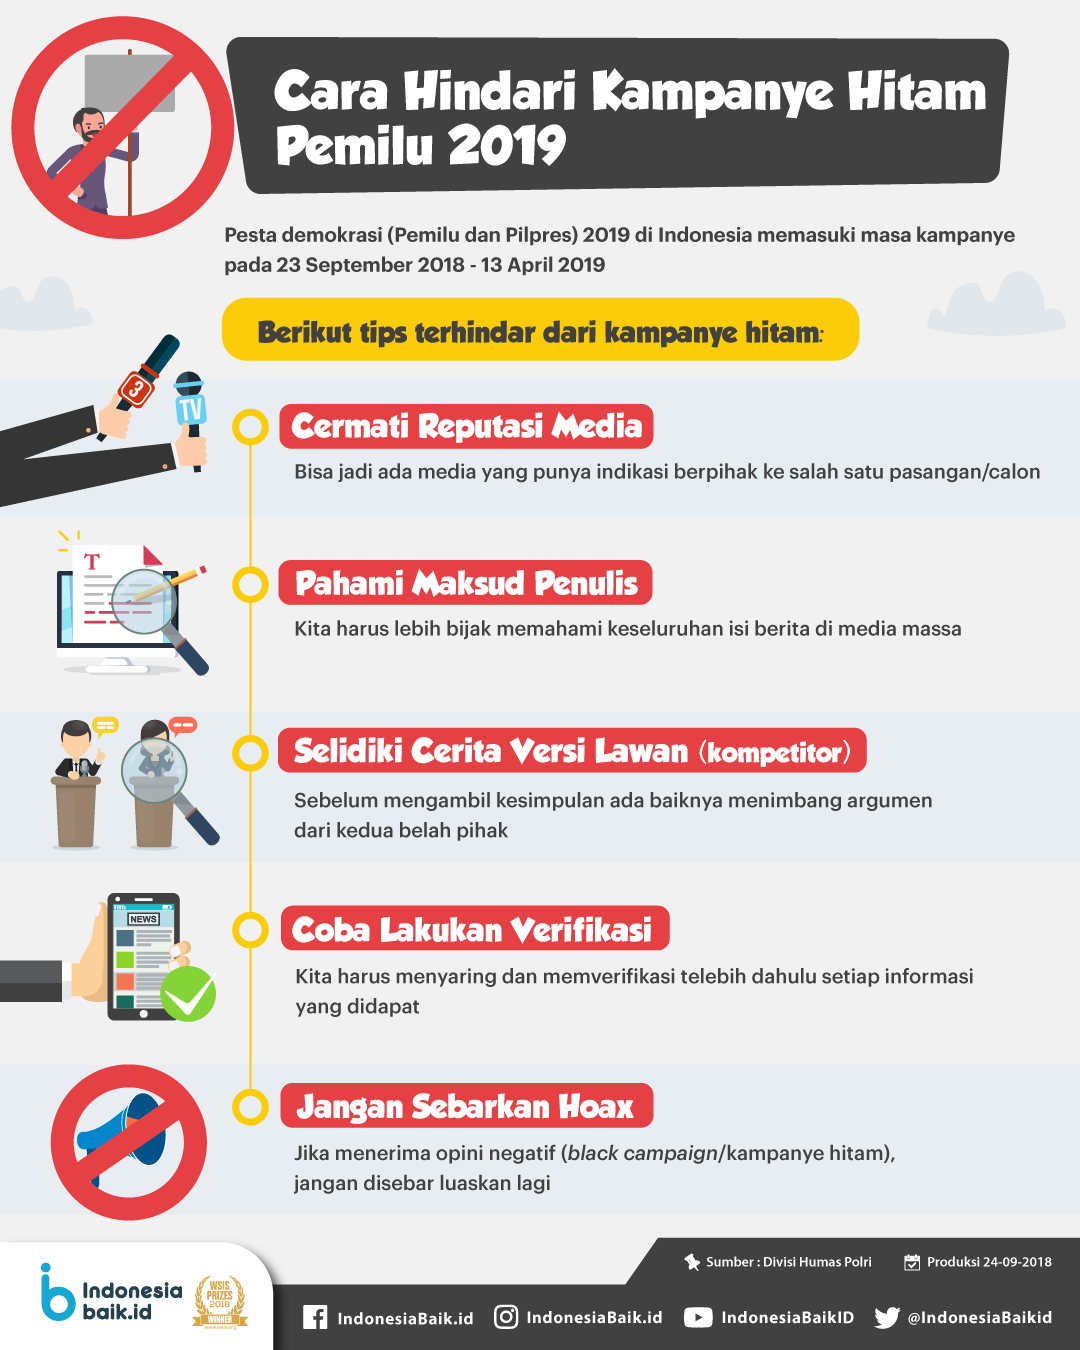 Cara Hindari Kampanye Hitam Pemilu 2019  Indonesia Baik